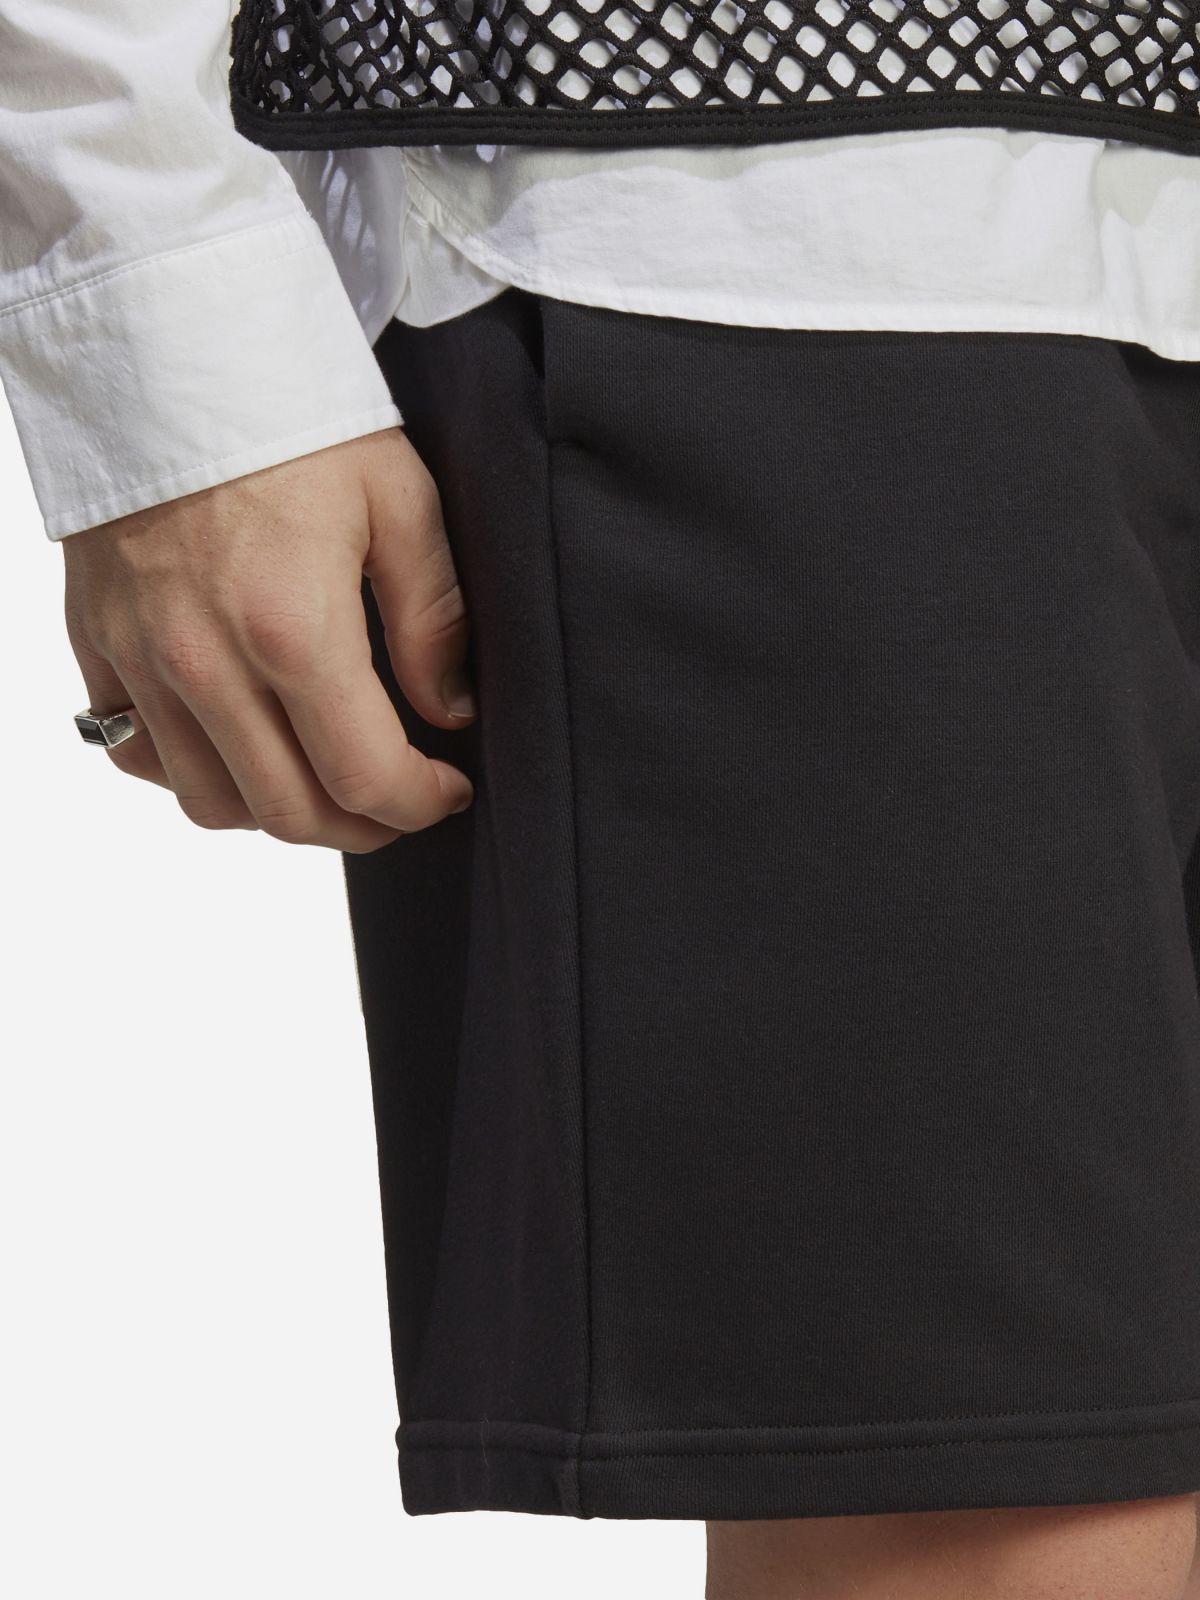  מכנסיים קצרים עם לוגו של ADIDAS Performance